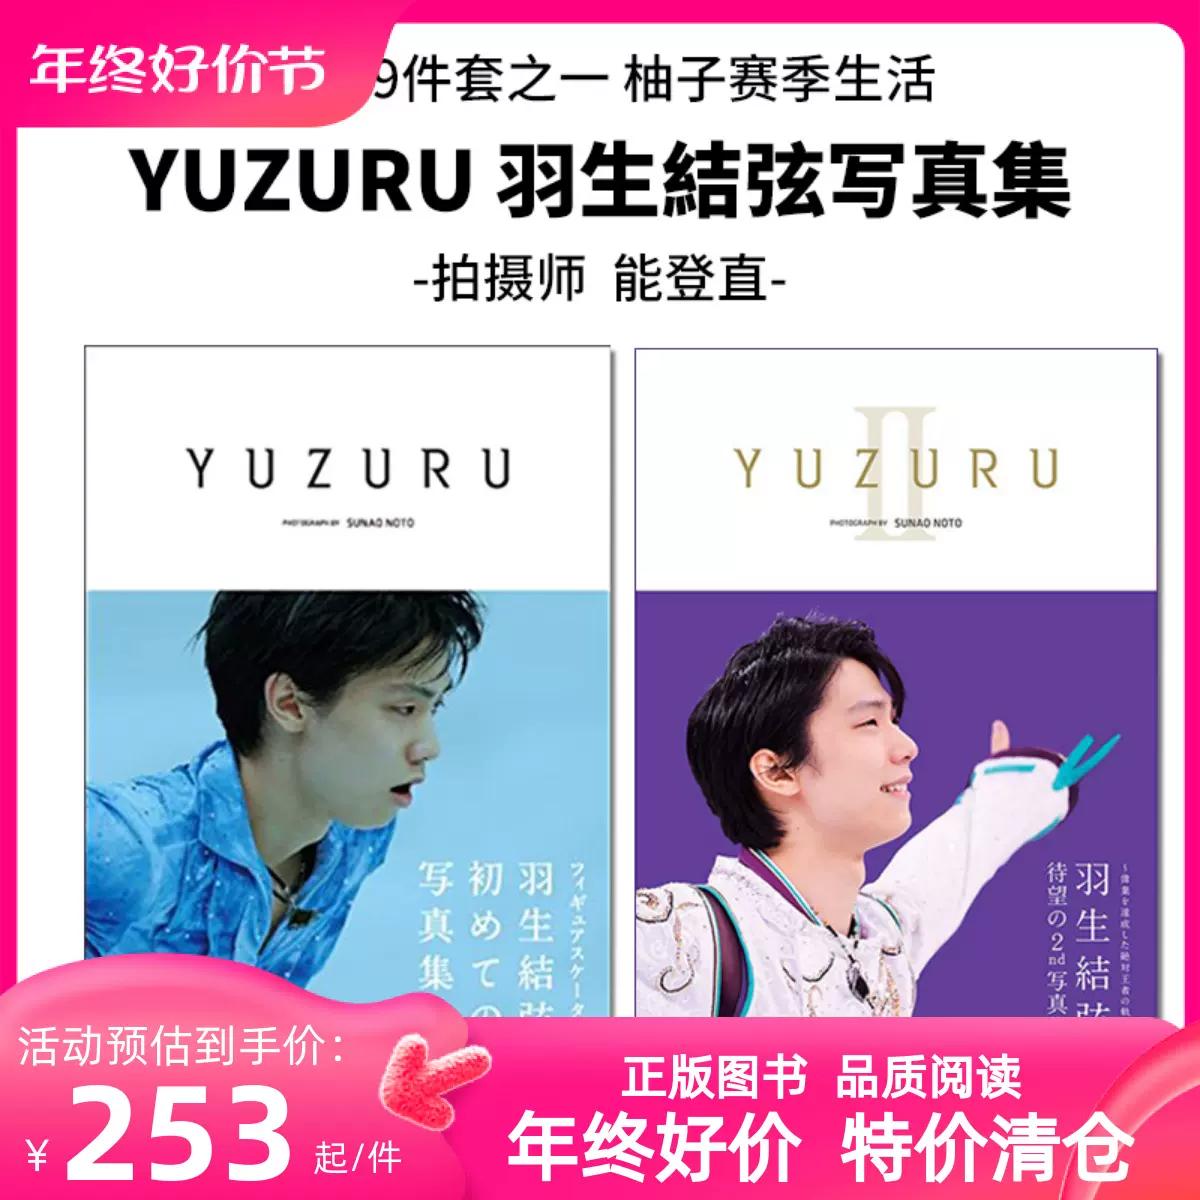 正規販売店 Always of YUZURU Stuff 羽生結弦写真集 羽生結弦Yuzuru 本